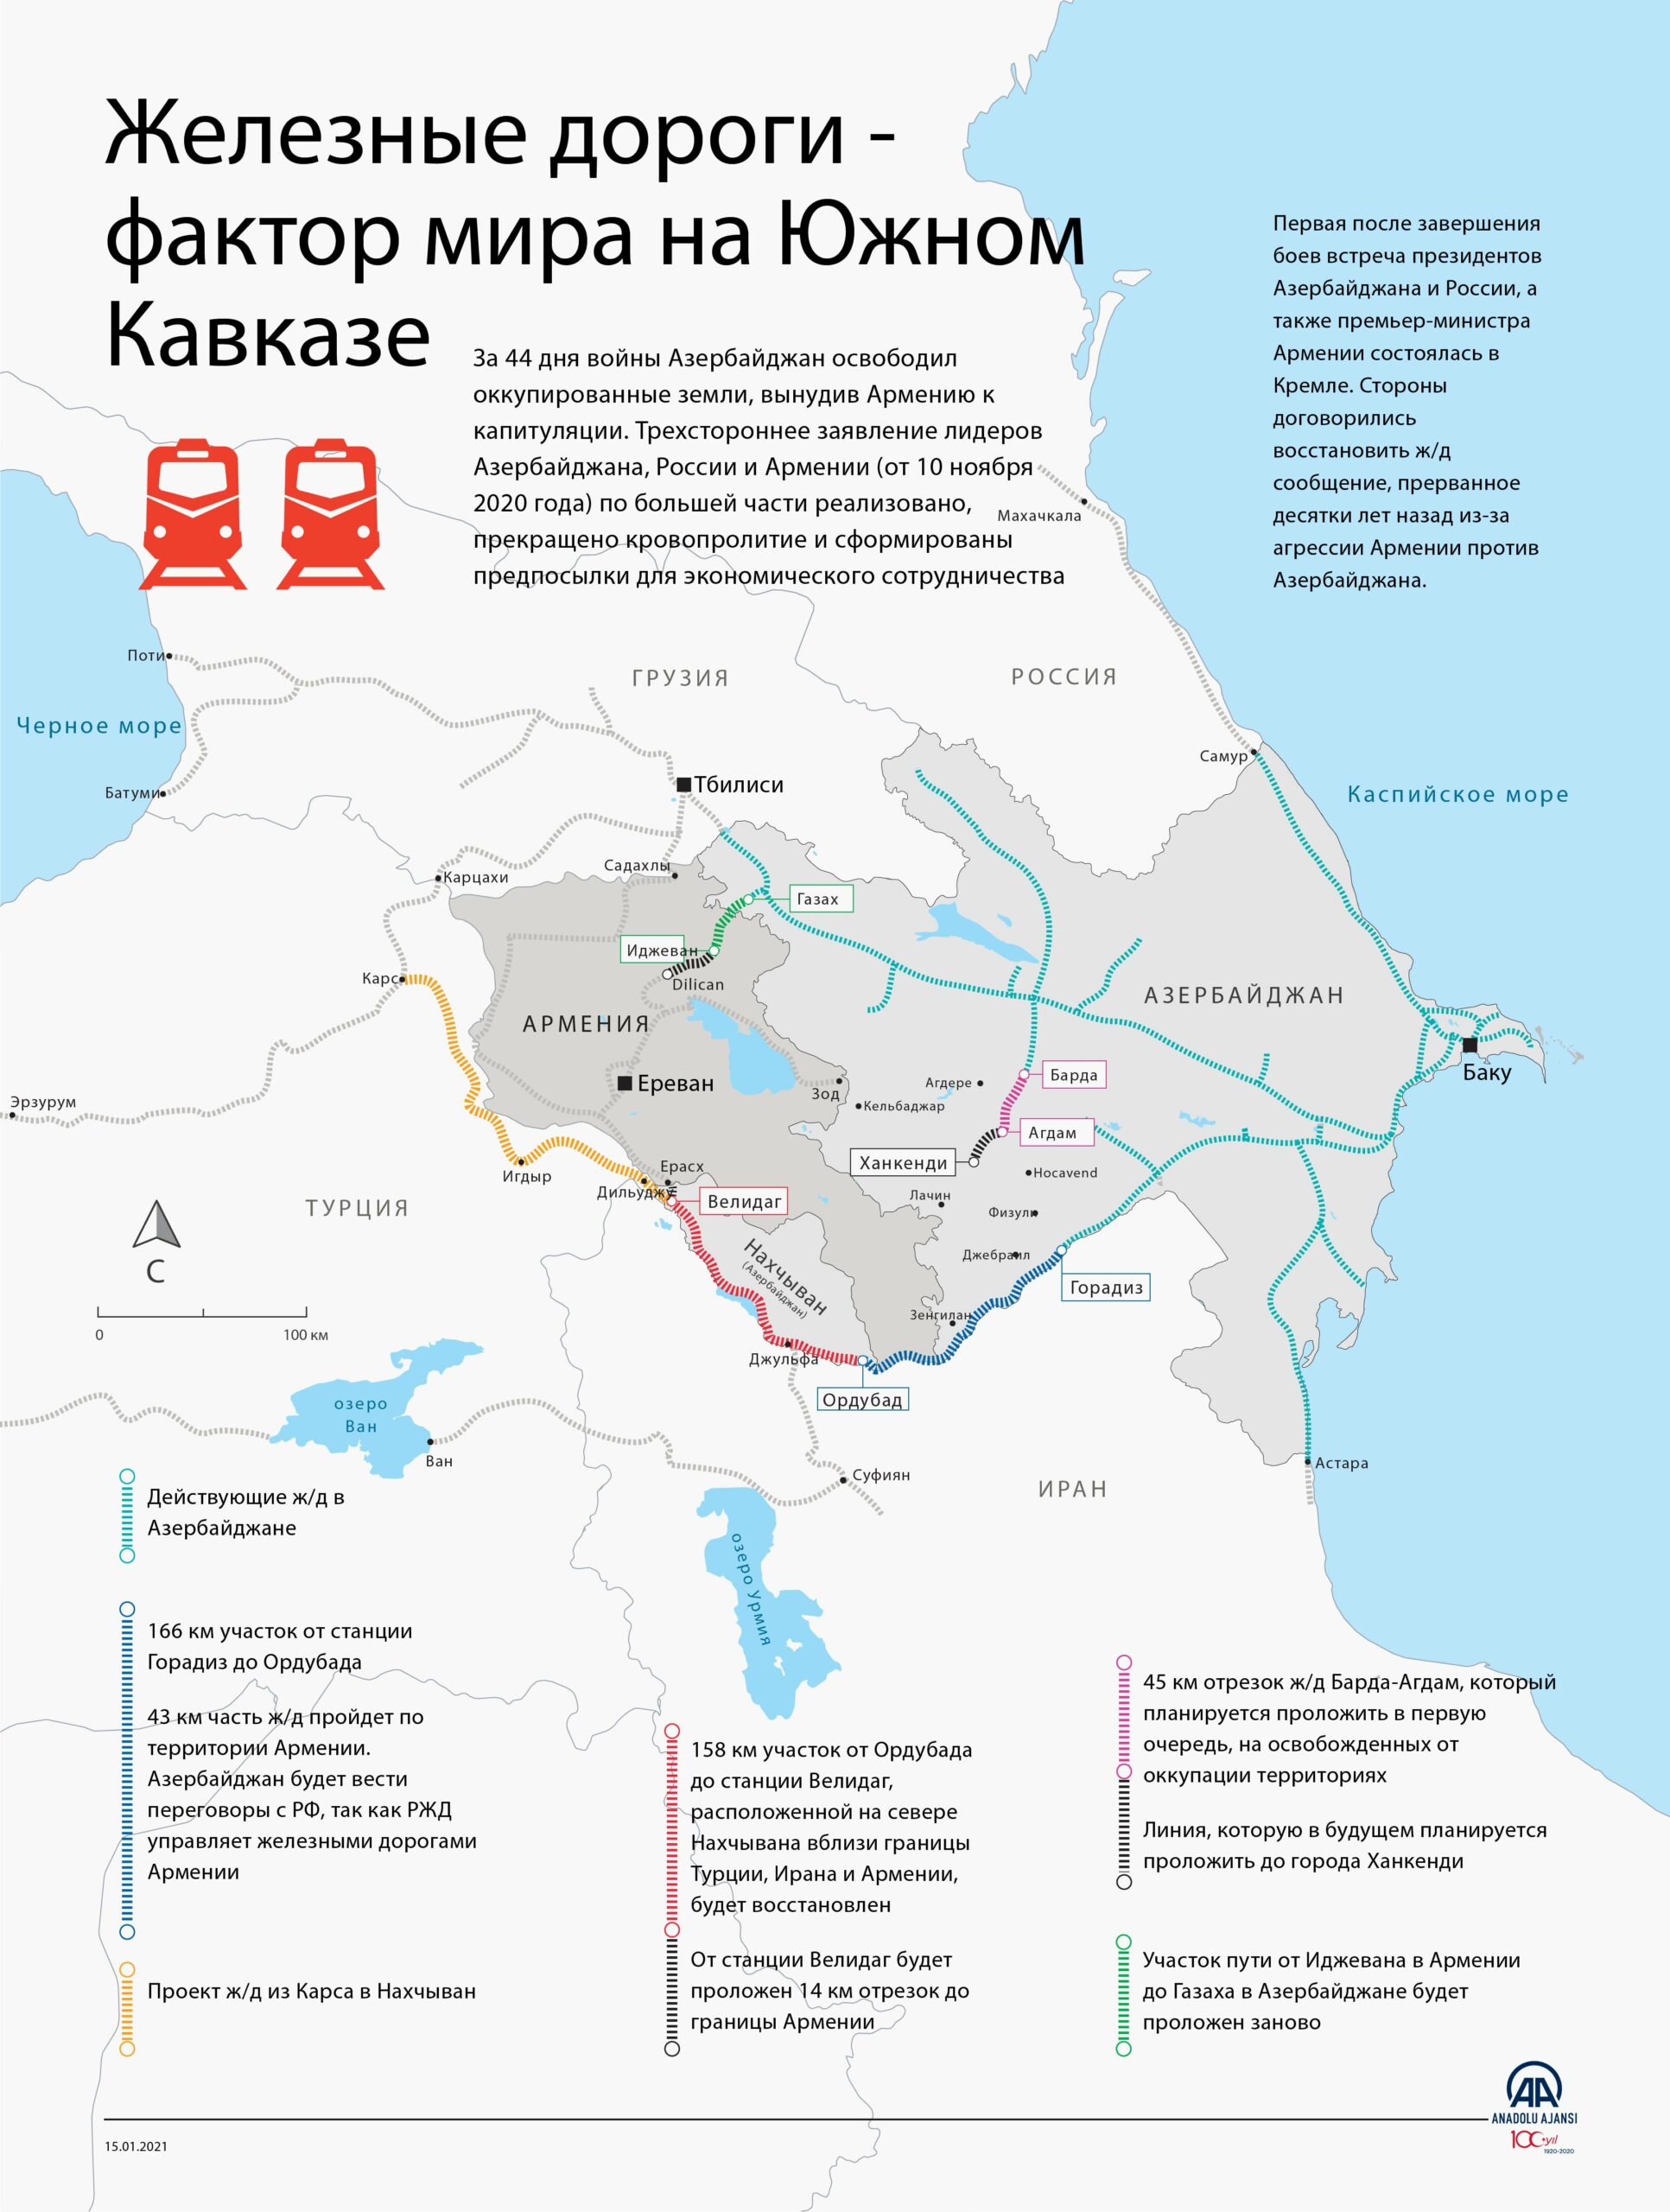 Железные дороги — важный фактор мира на Южном Кавказе